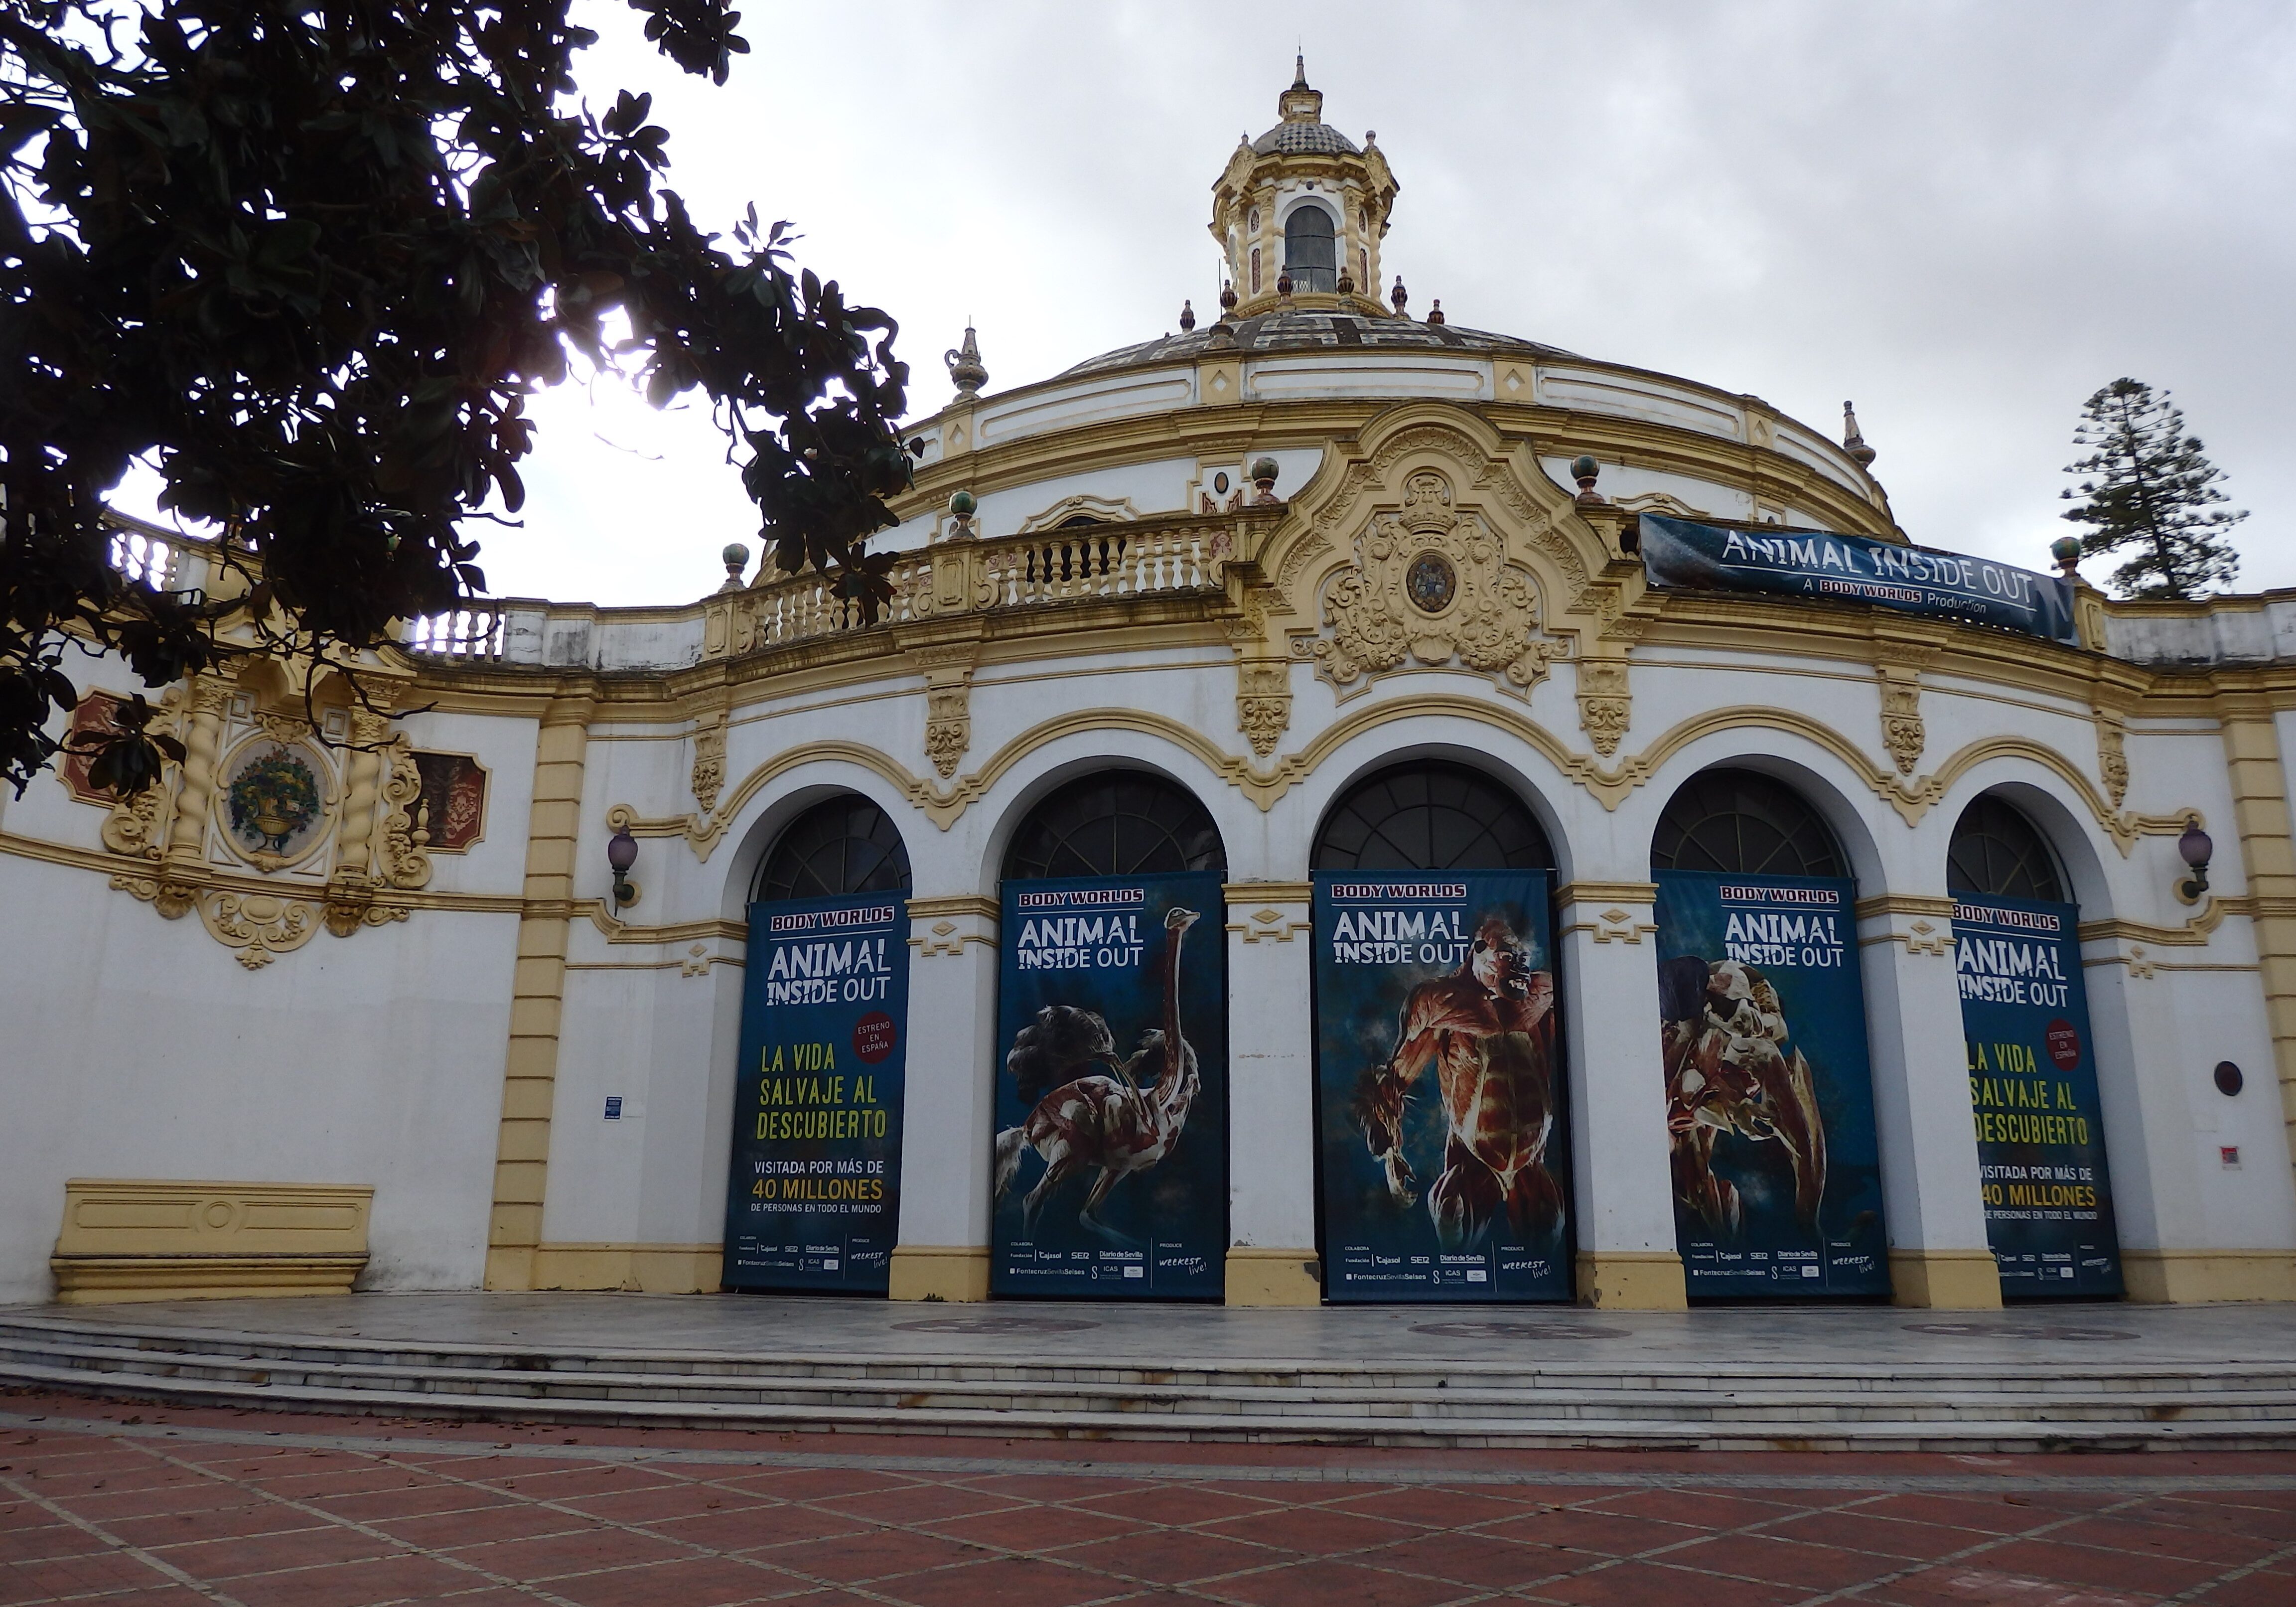 Lope de Vega Theater